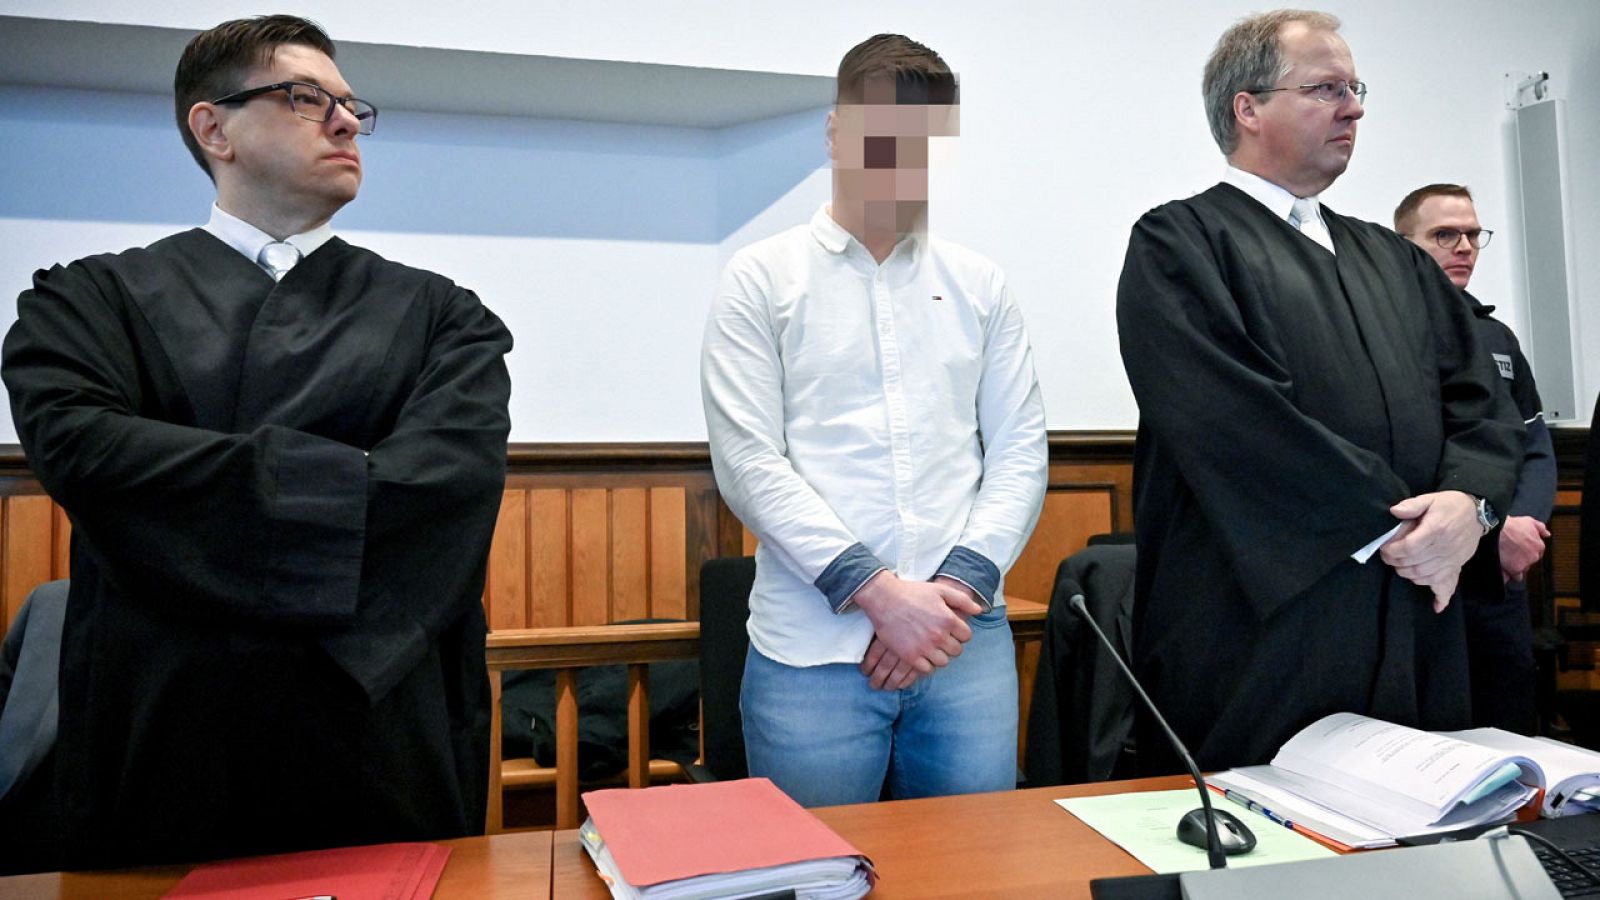 El condenado a cadena perpetua, durante el juicio en Kleve